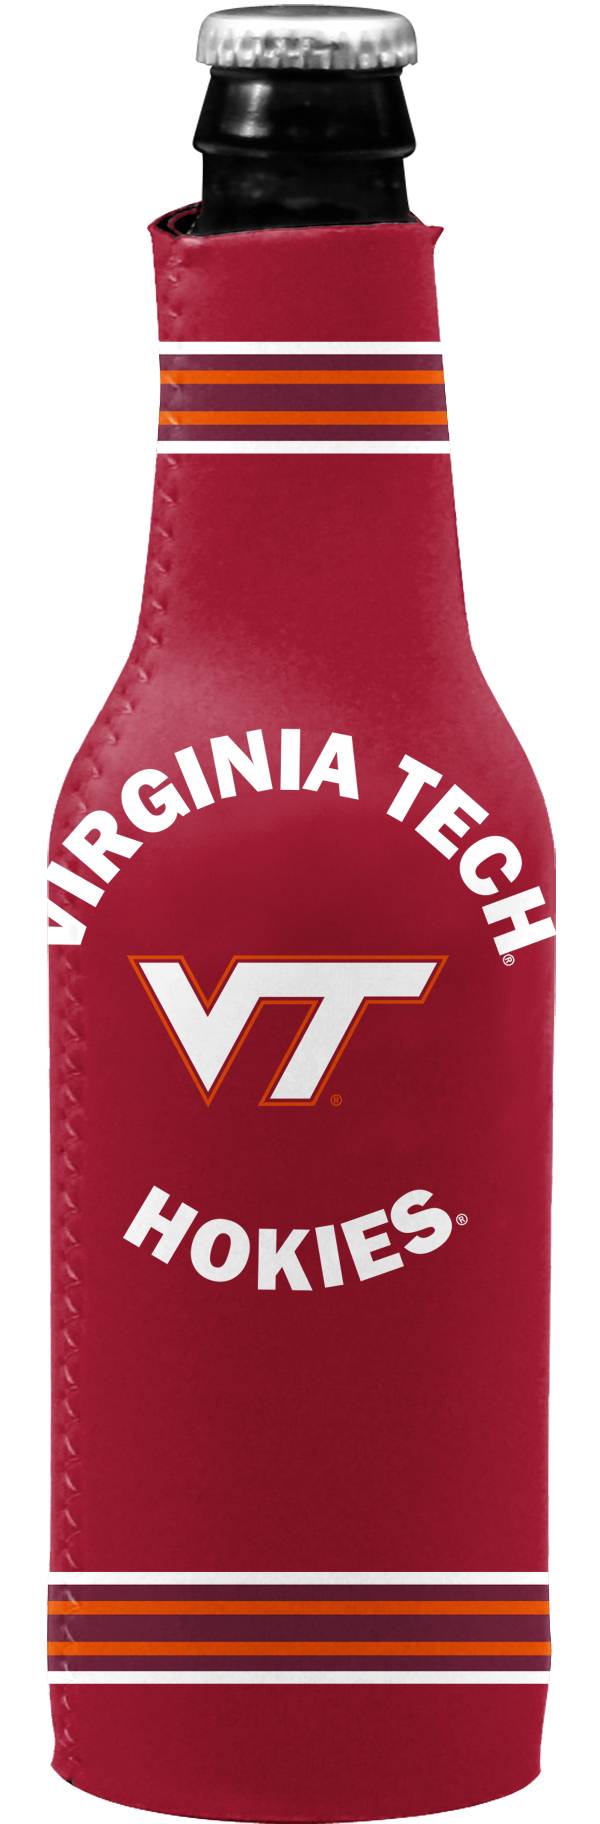 NCAA Virginia Tech Hokies Bottle Drink Coozie 